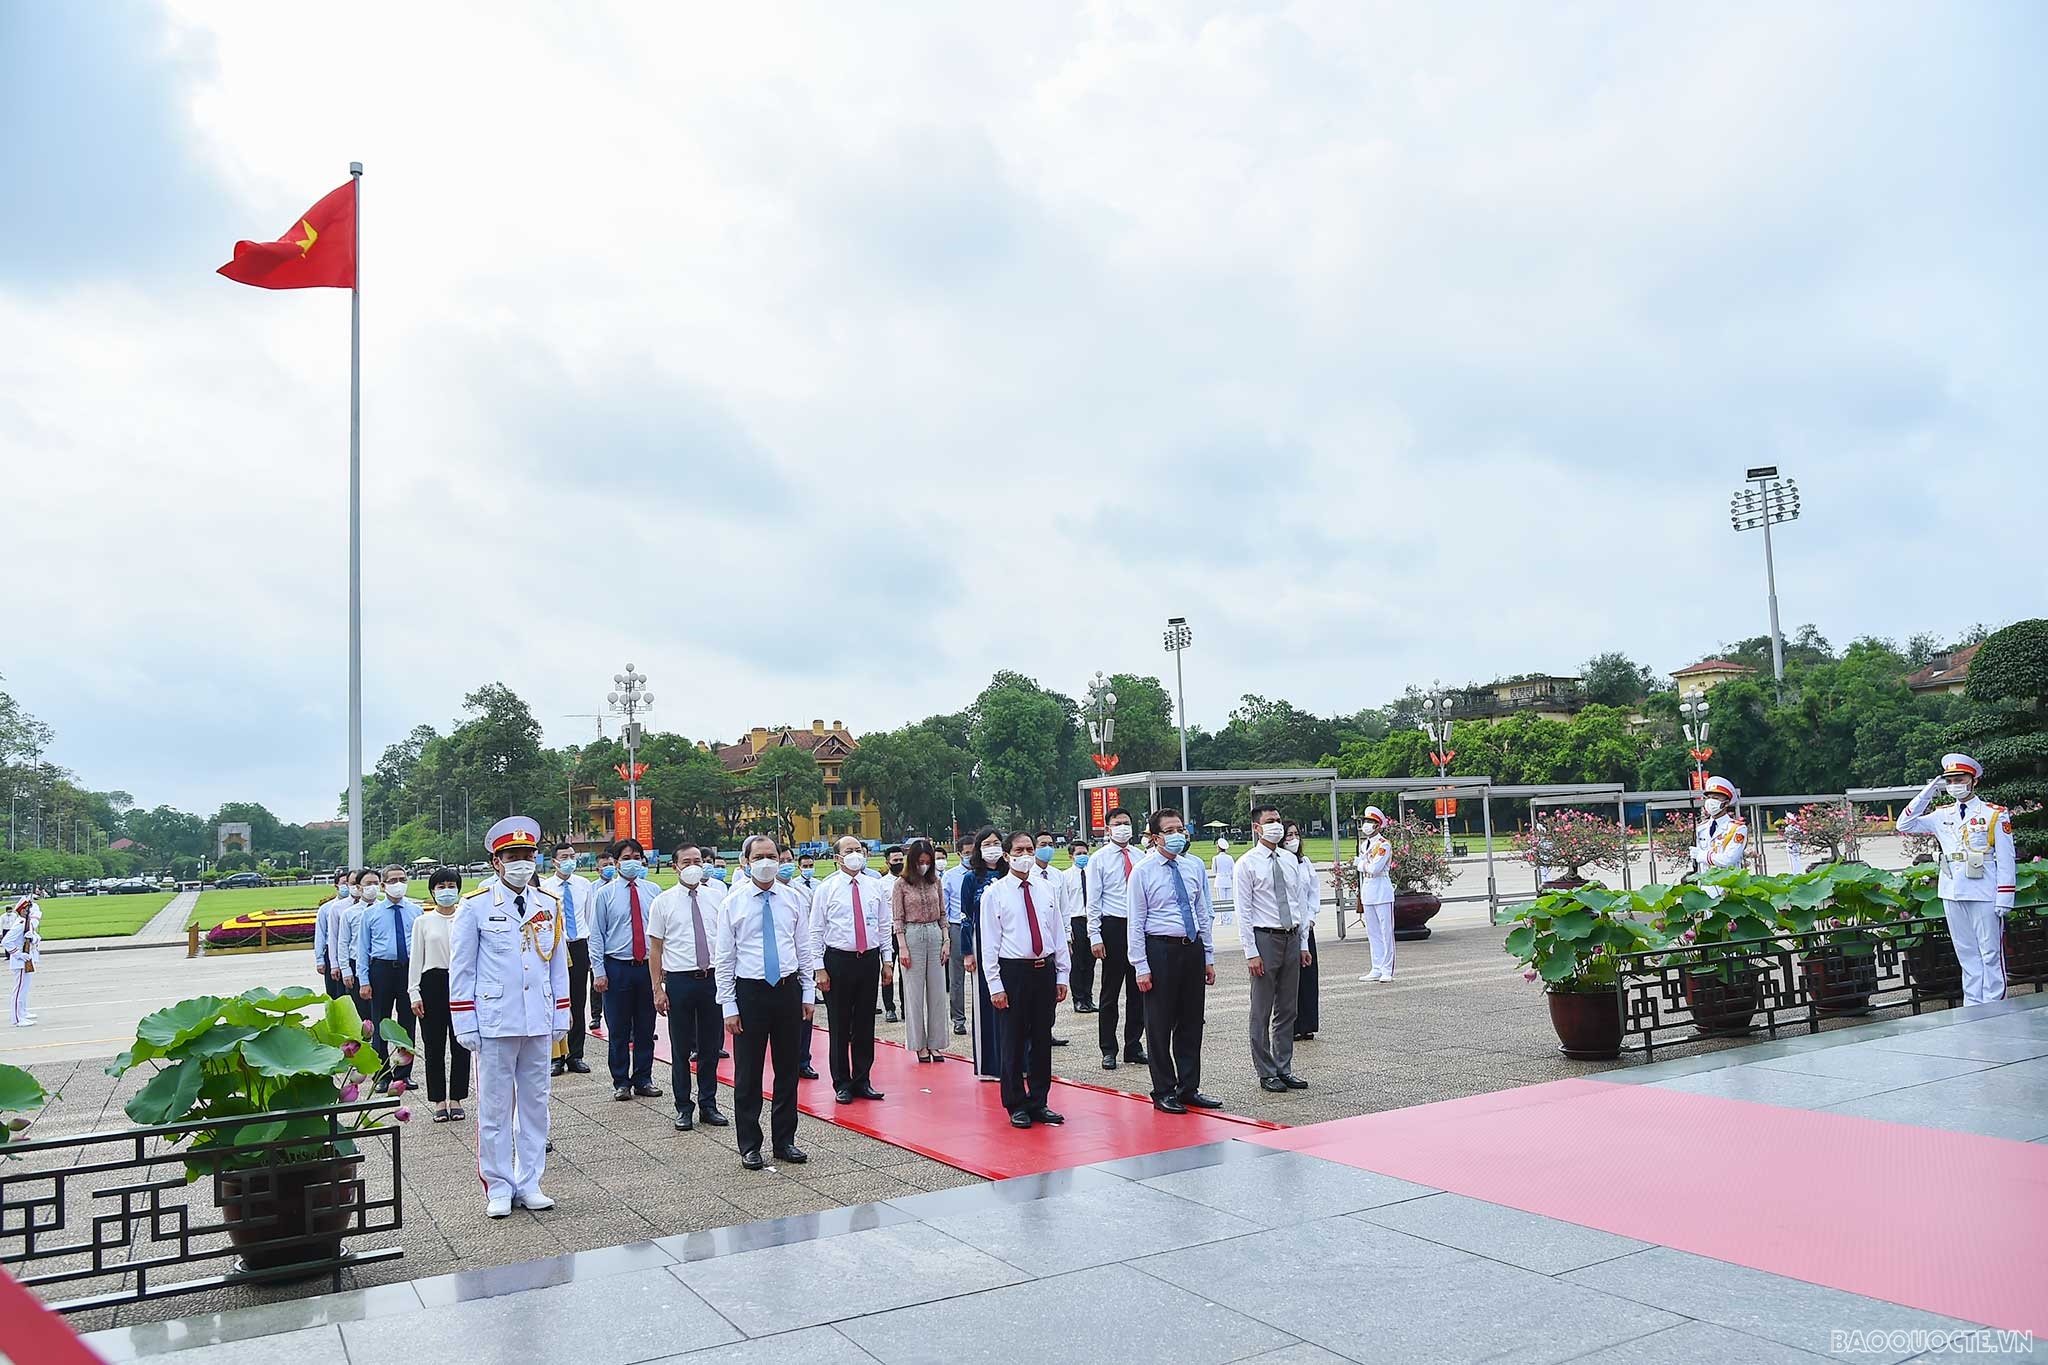 Trong không khí trang nghiêm, các cán bộ Bộ Ngoại giao thành kính tưởng nhớ Chủ tịch Hồ Chí Minh, vị lãnh tụ thiên tài, người sáng lập và rèn luyện Đảng Cộng sản Việt Nam cũng như công lao to lớn của Người đối với sự nghiệp cách mạng vẻ vang của dân tộc.